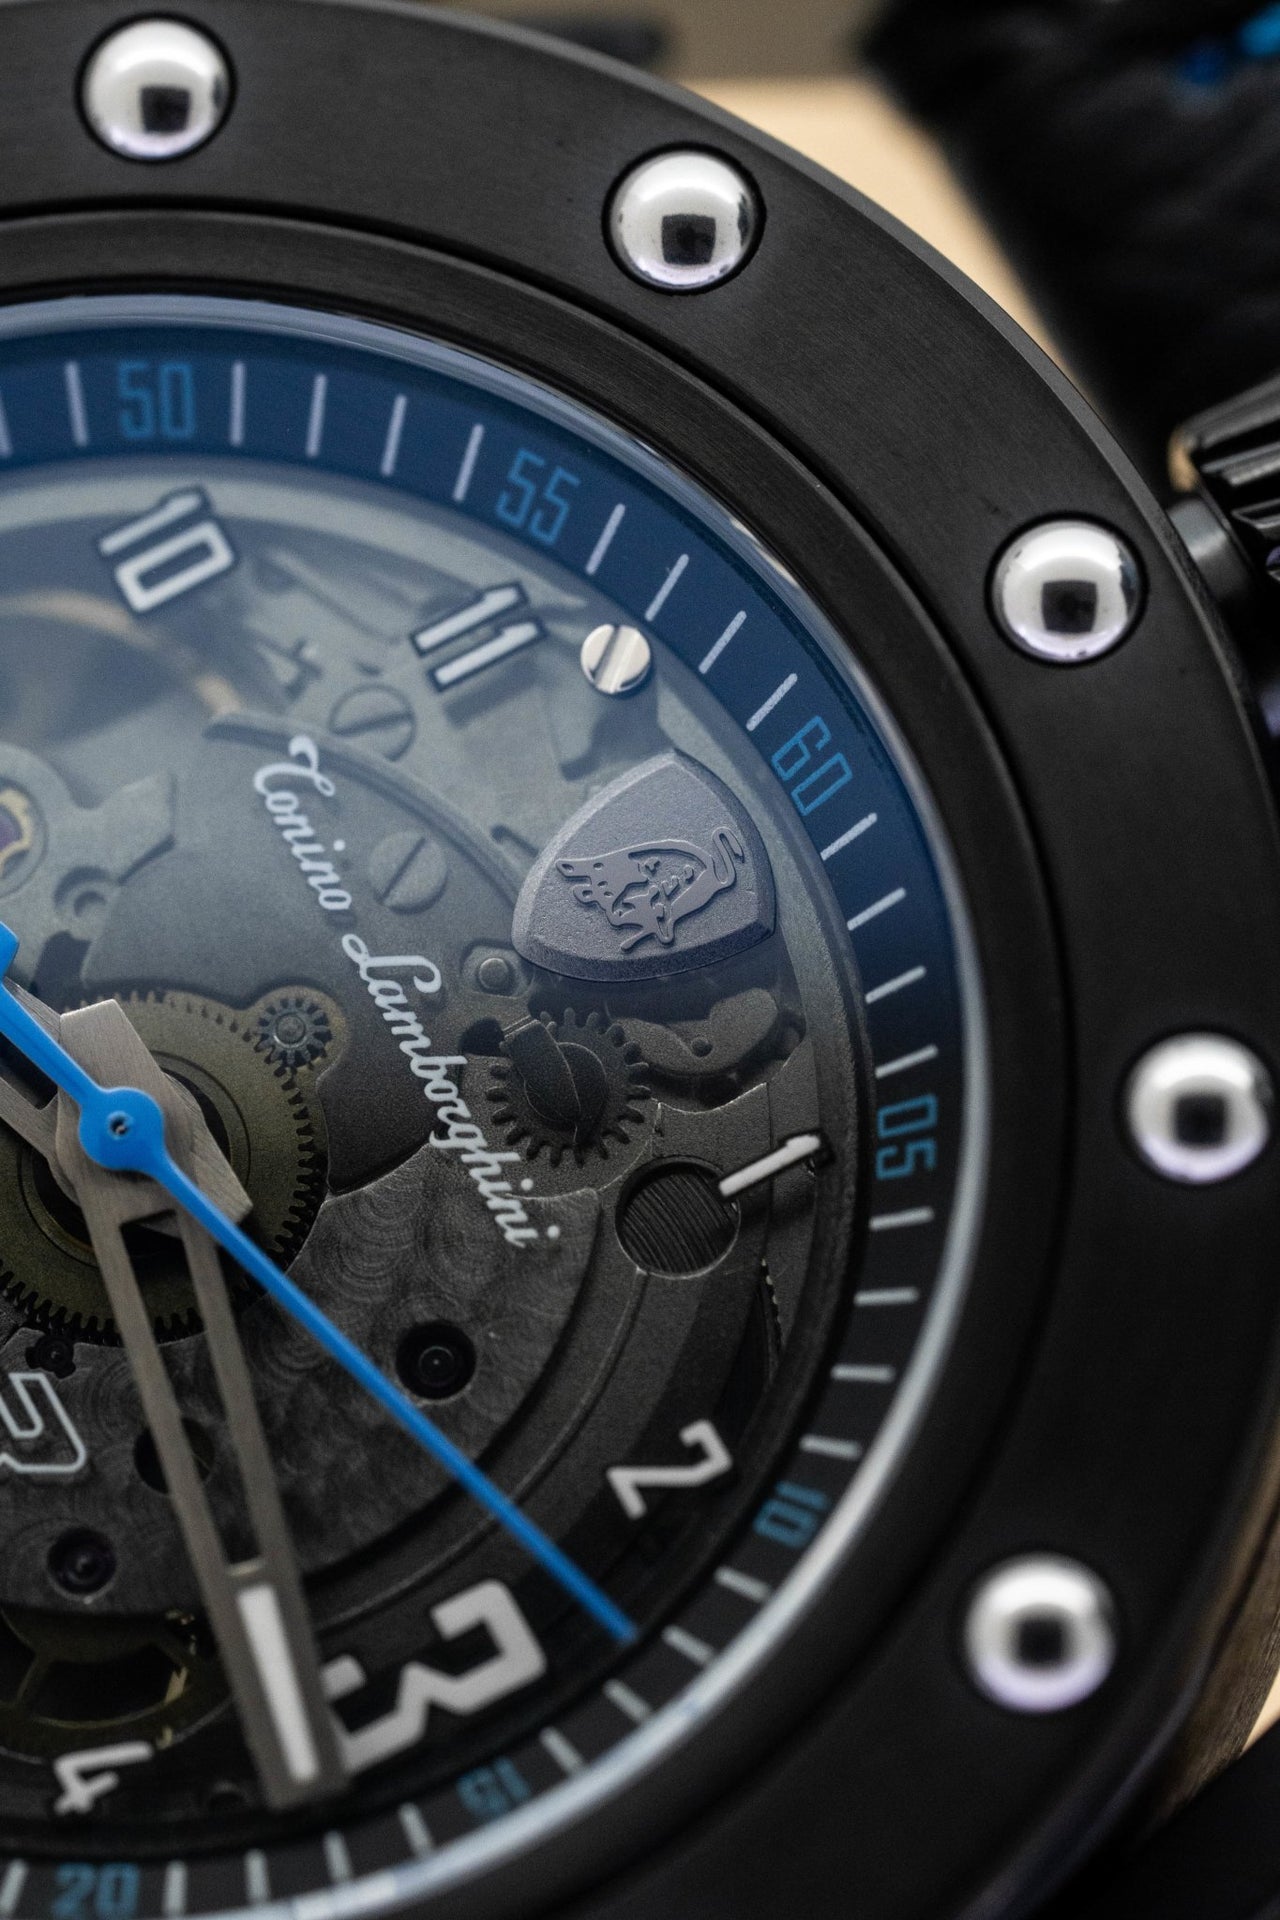 Tonino Lamborghini Cuscinetto R Blue - Watches & Crystals